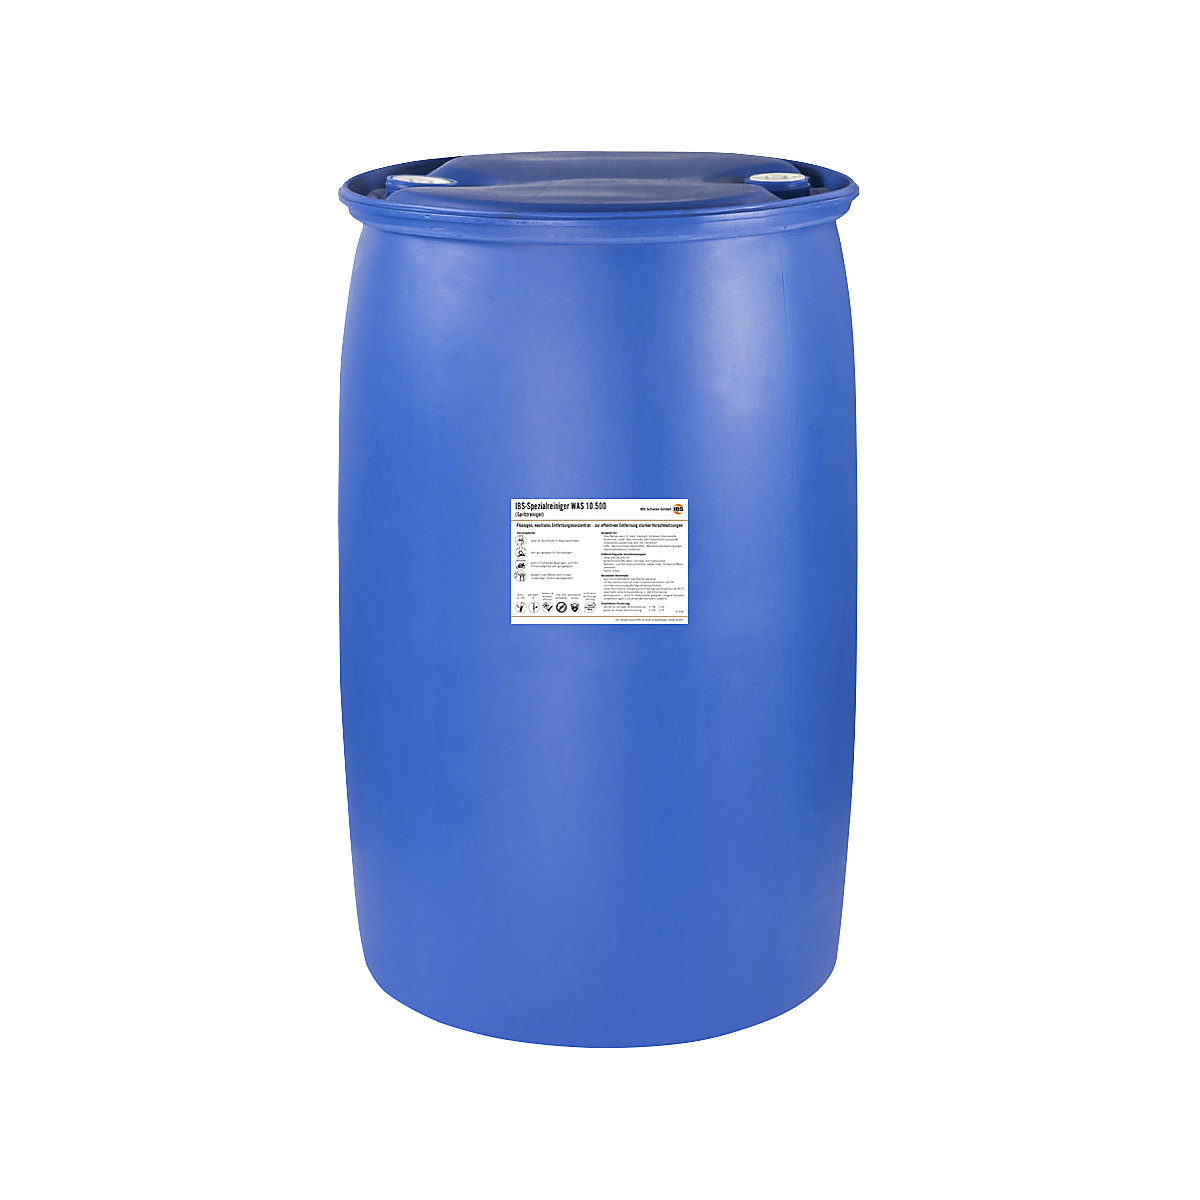 IBS Scherer – Detergente para pulverização WAS 10.500, valor pH 9, bidão de 200 l